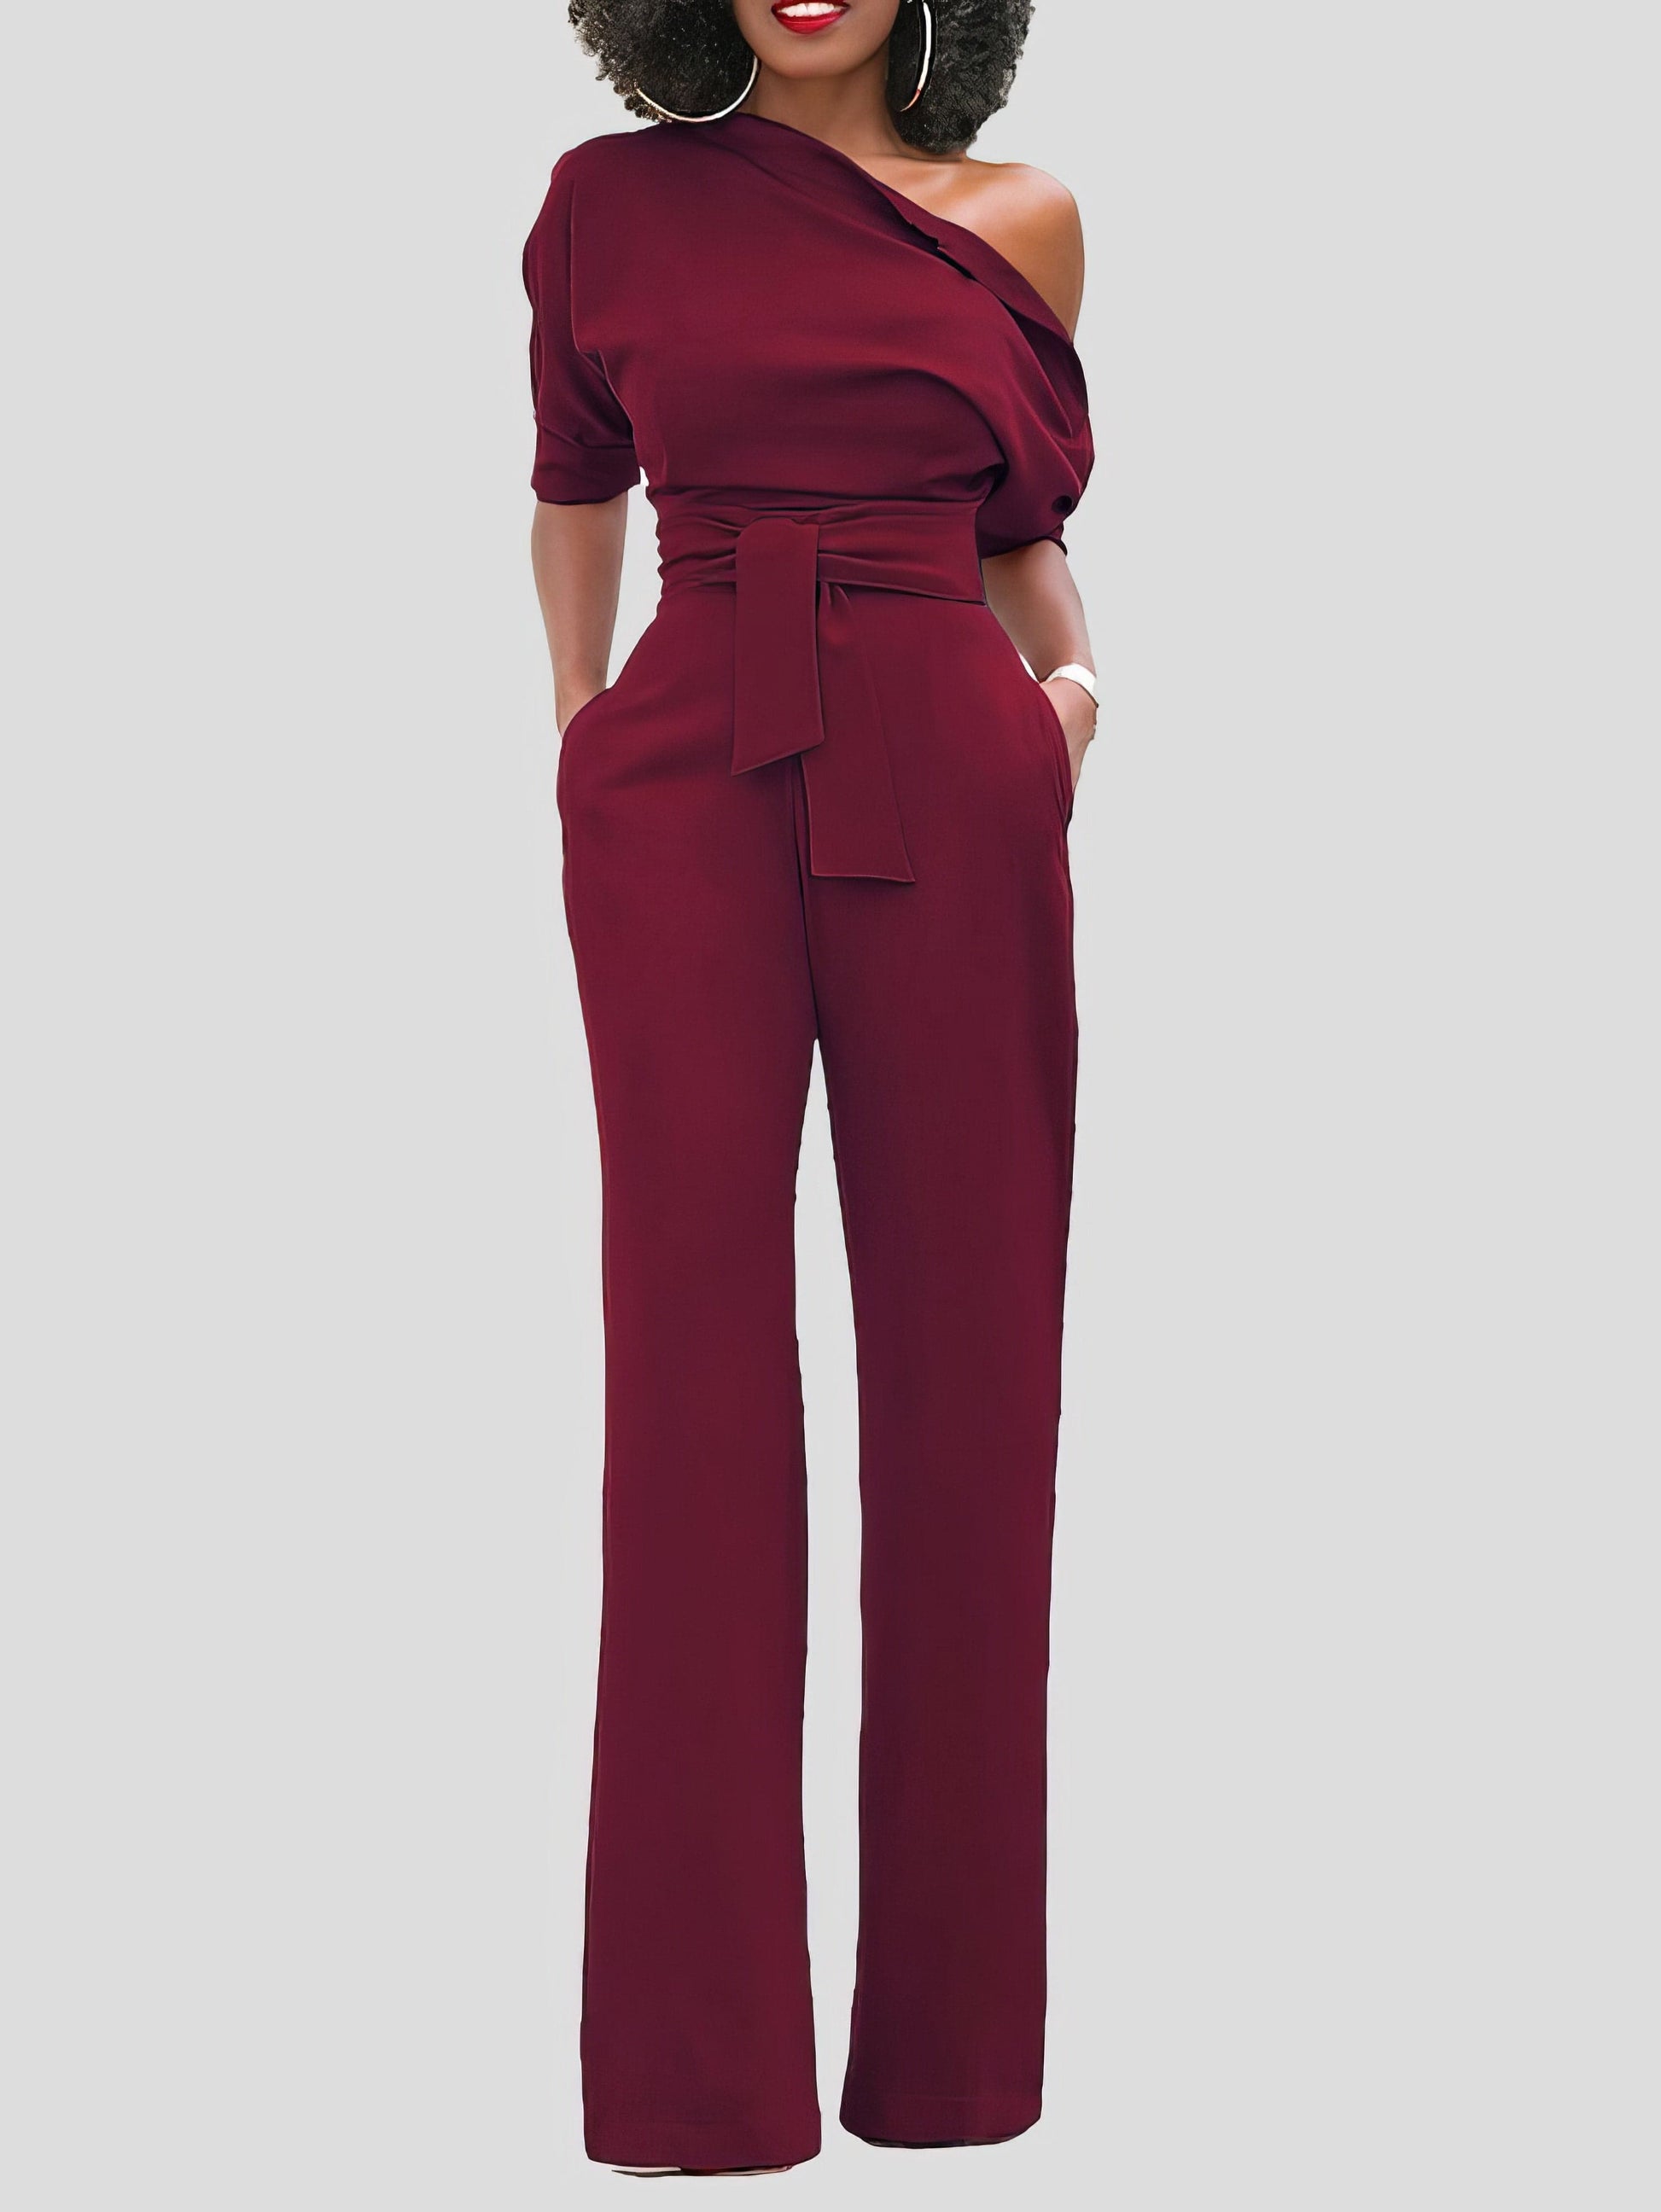 Solid Color One Shoulder Short Sleeve Jumpsuit JUM210524169WINEREDS Red / 2 (S)